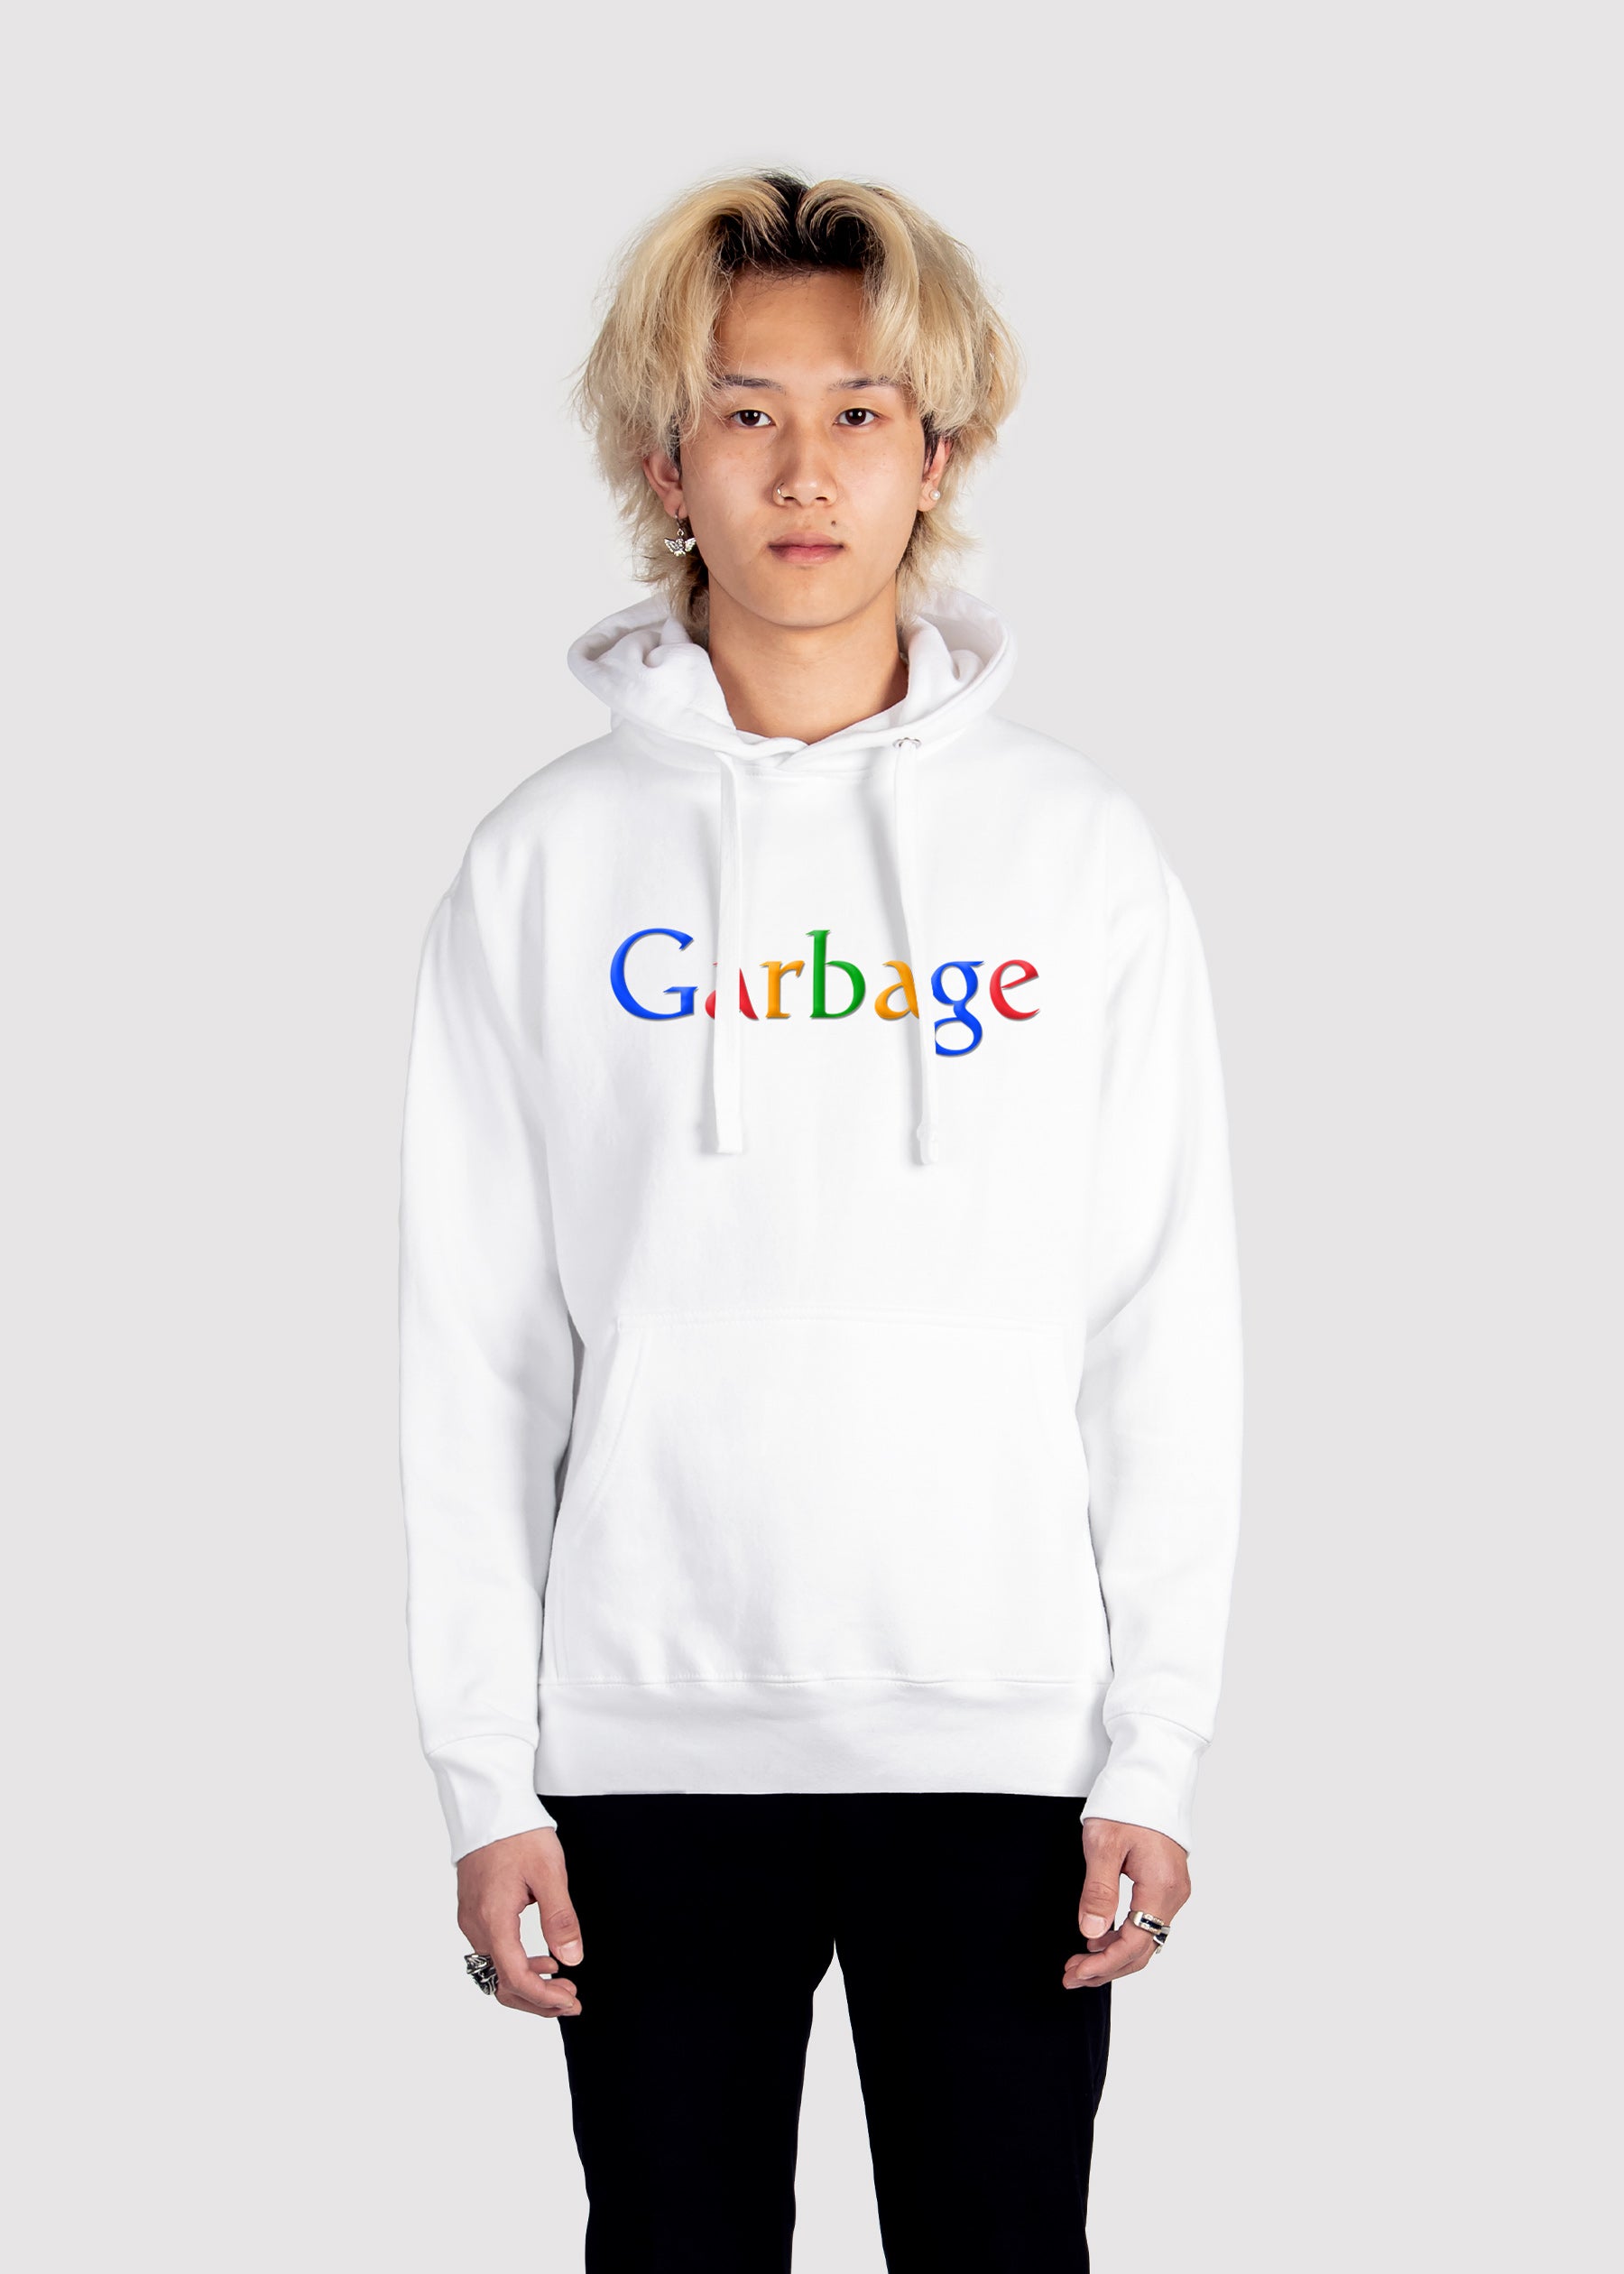 Garbage.com Hoodie